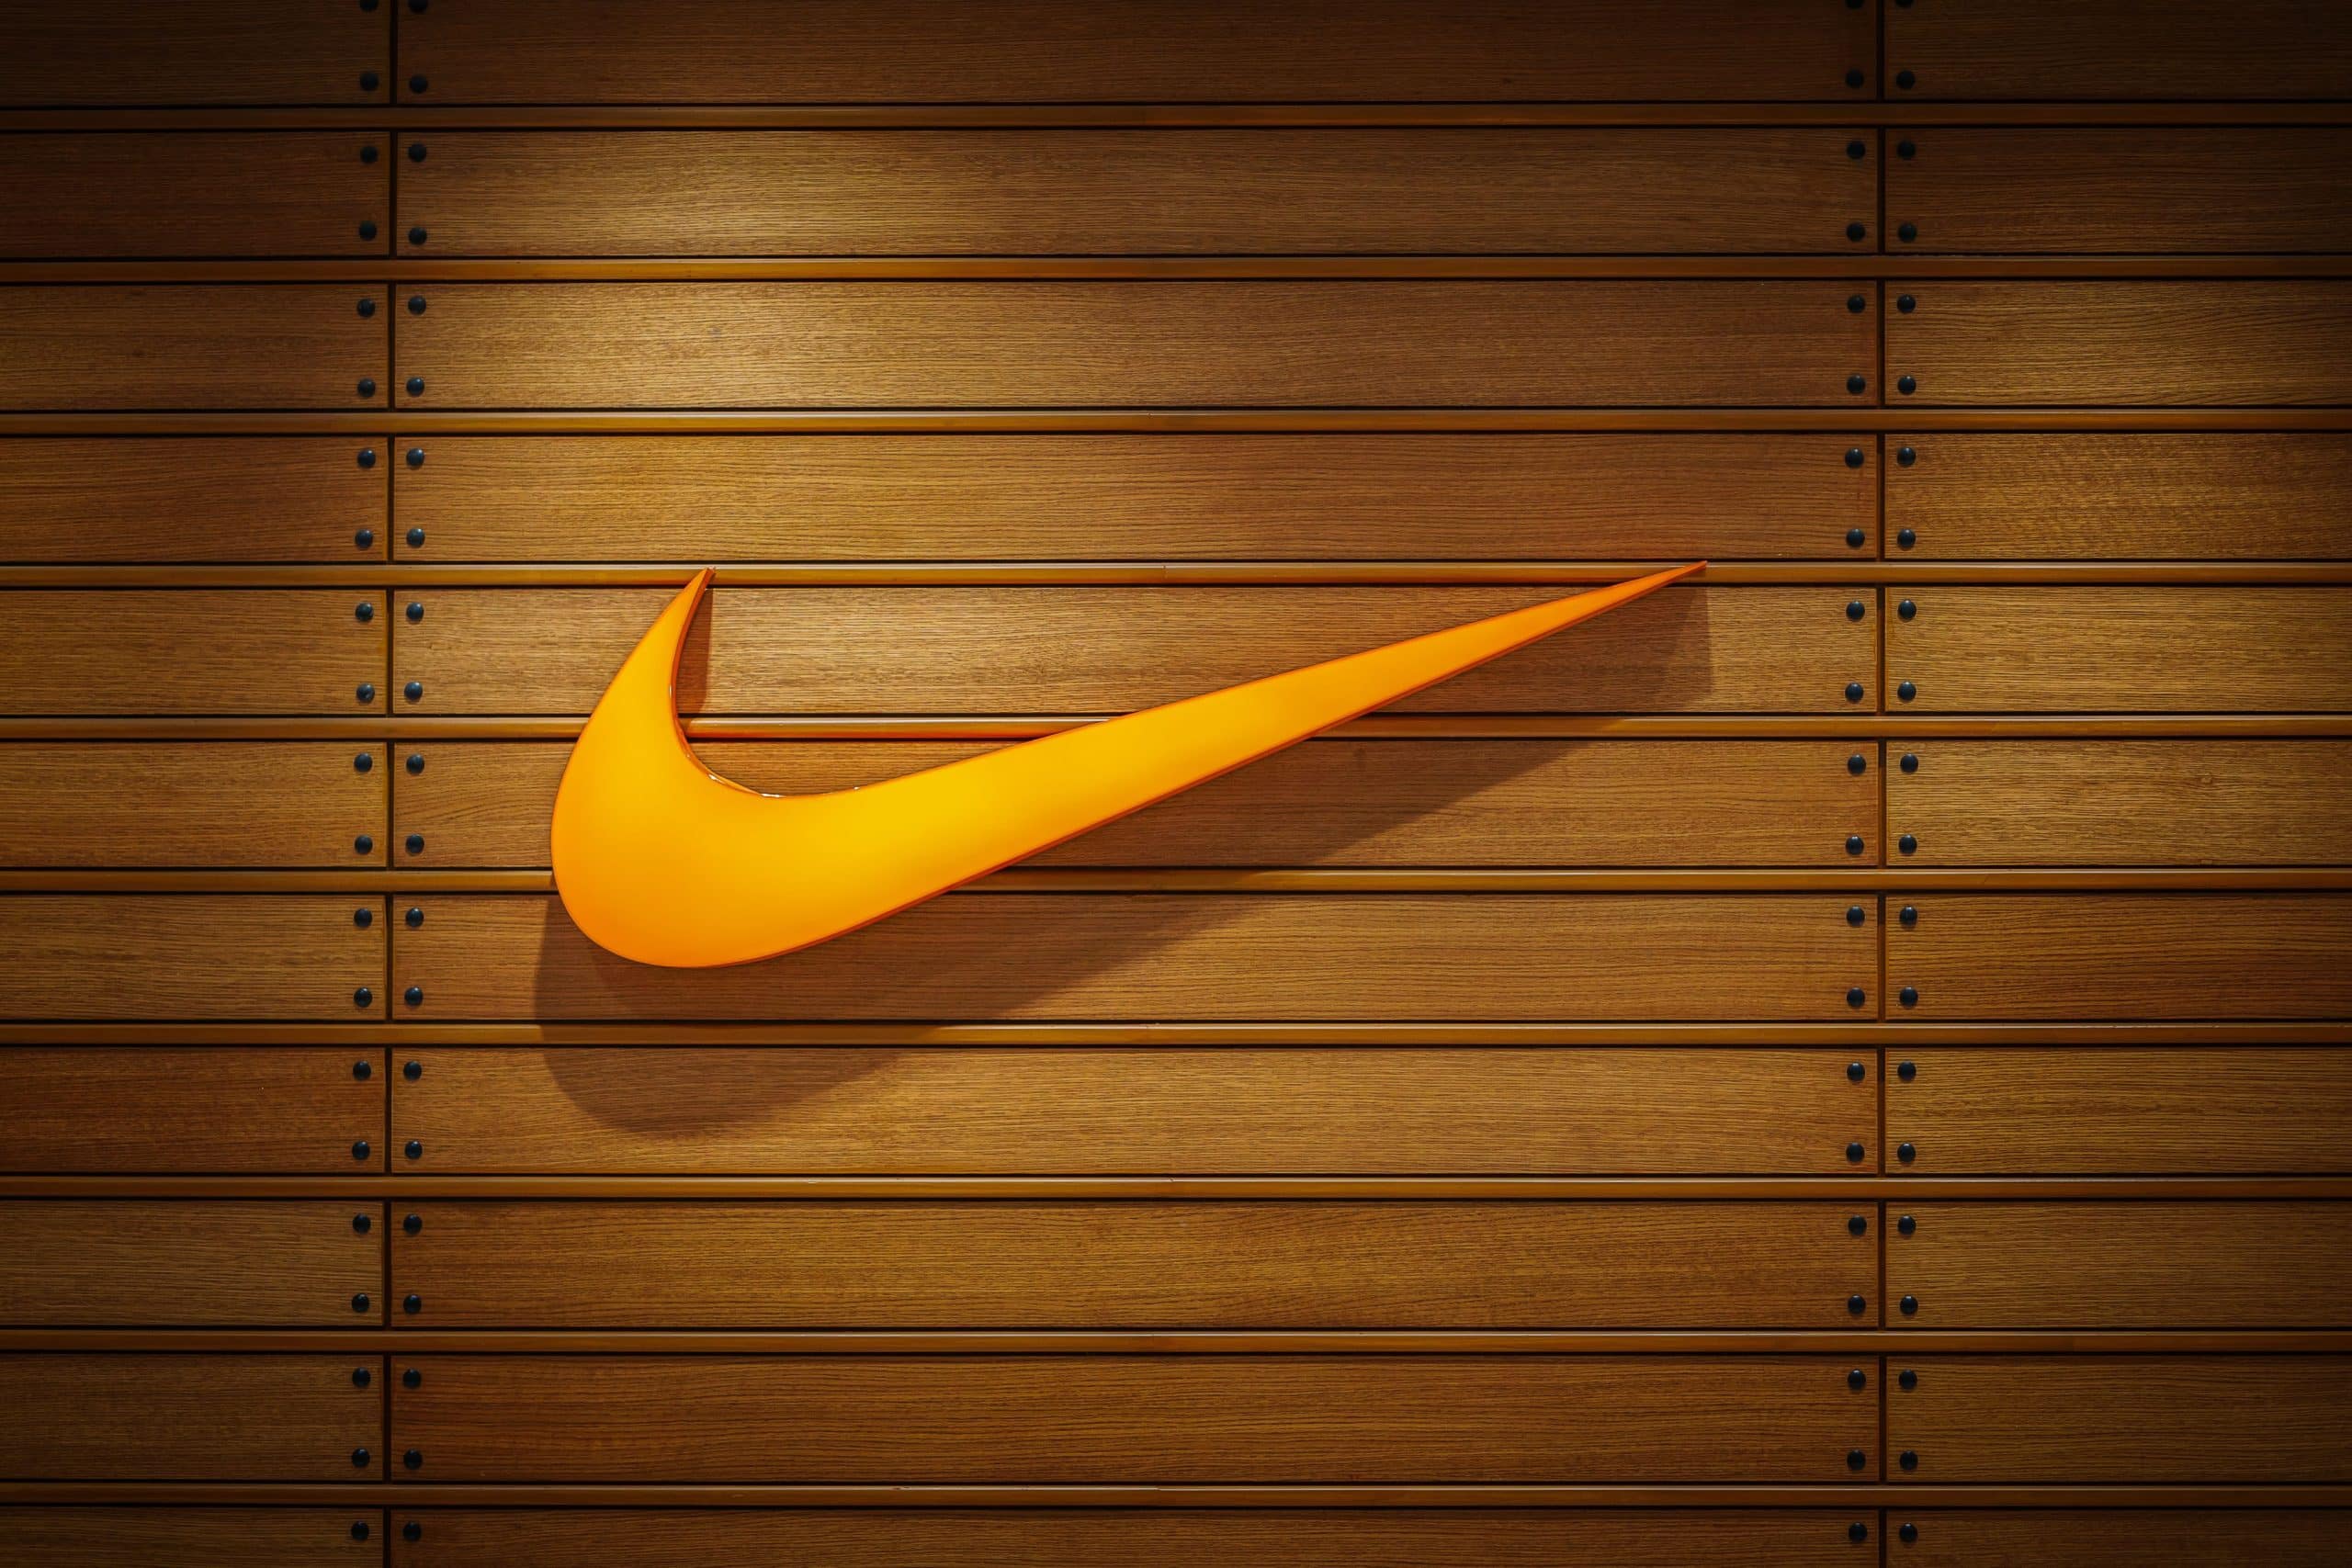 Marketing da Nike